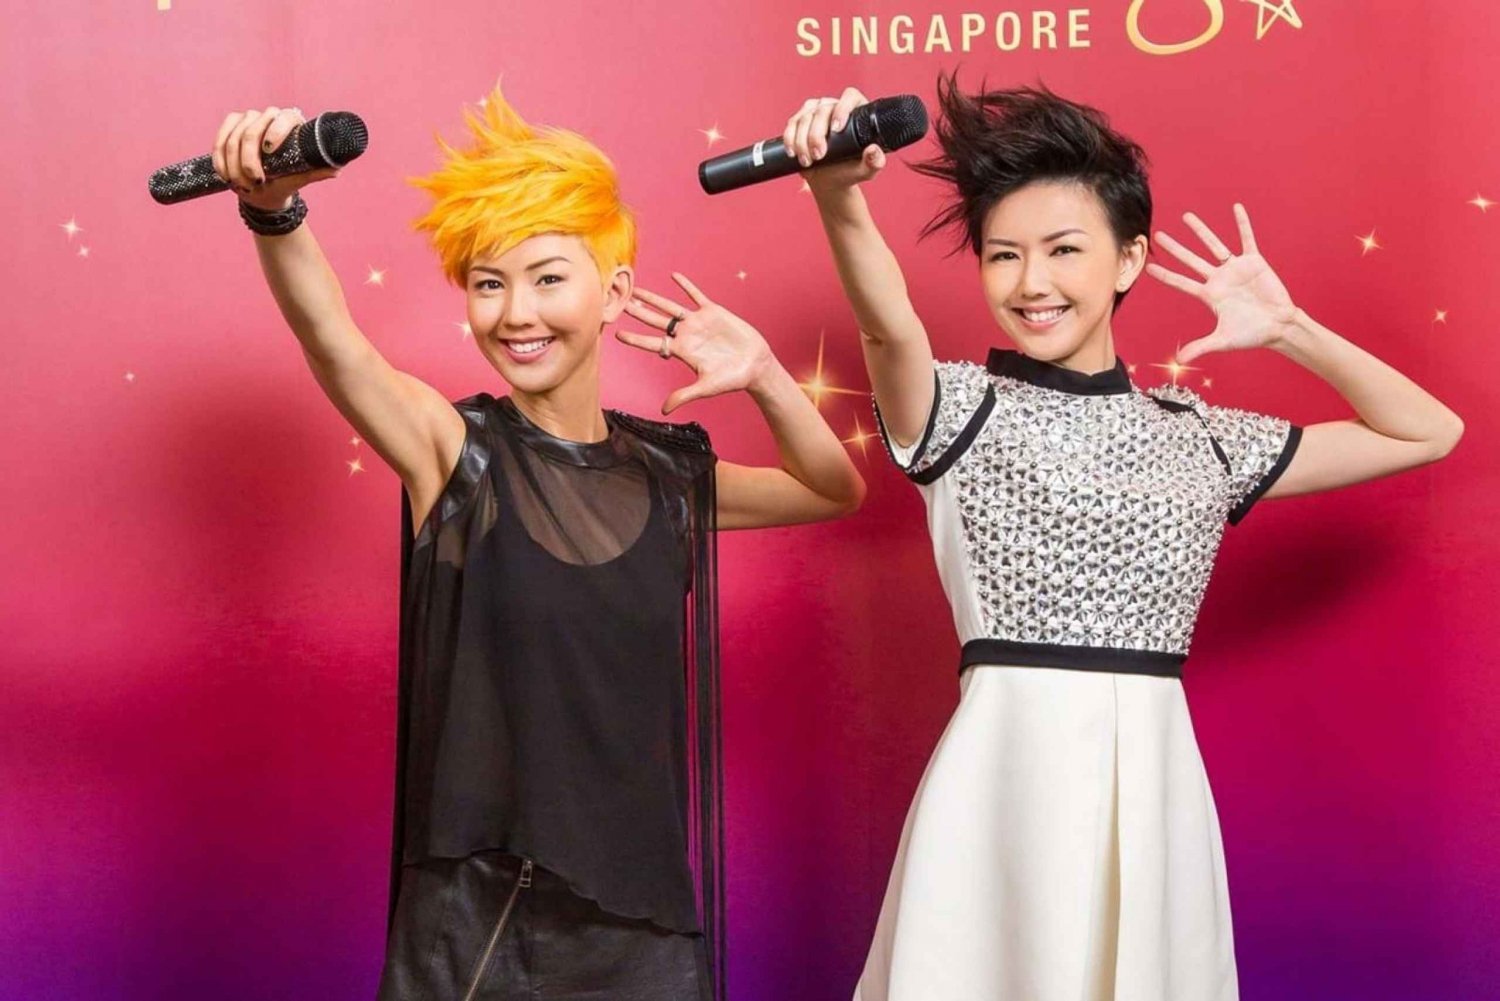 Singapore: Madame Tussauds Experience